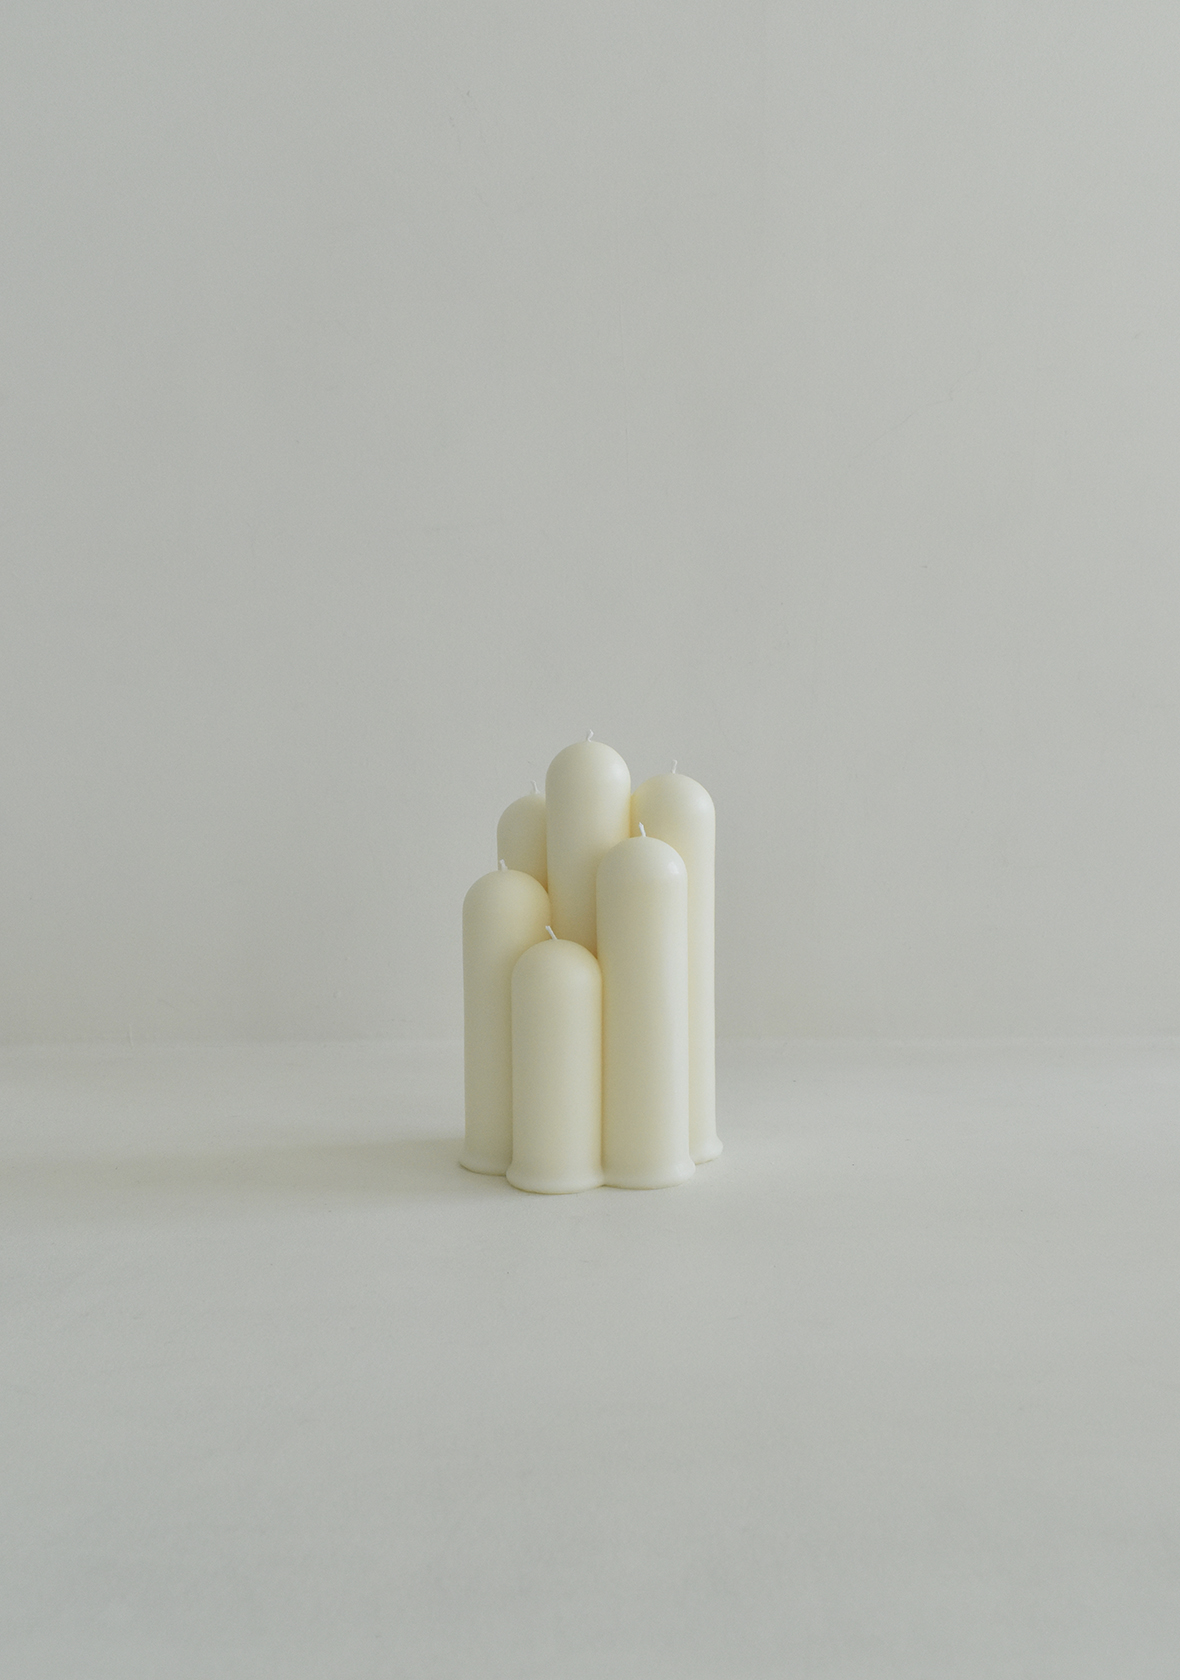 Tube Stick Candle - Ivory